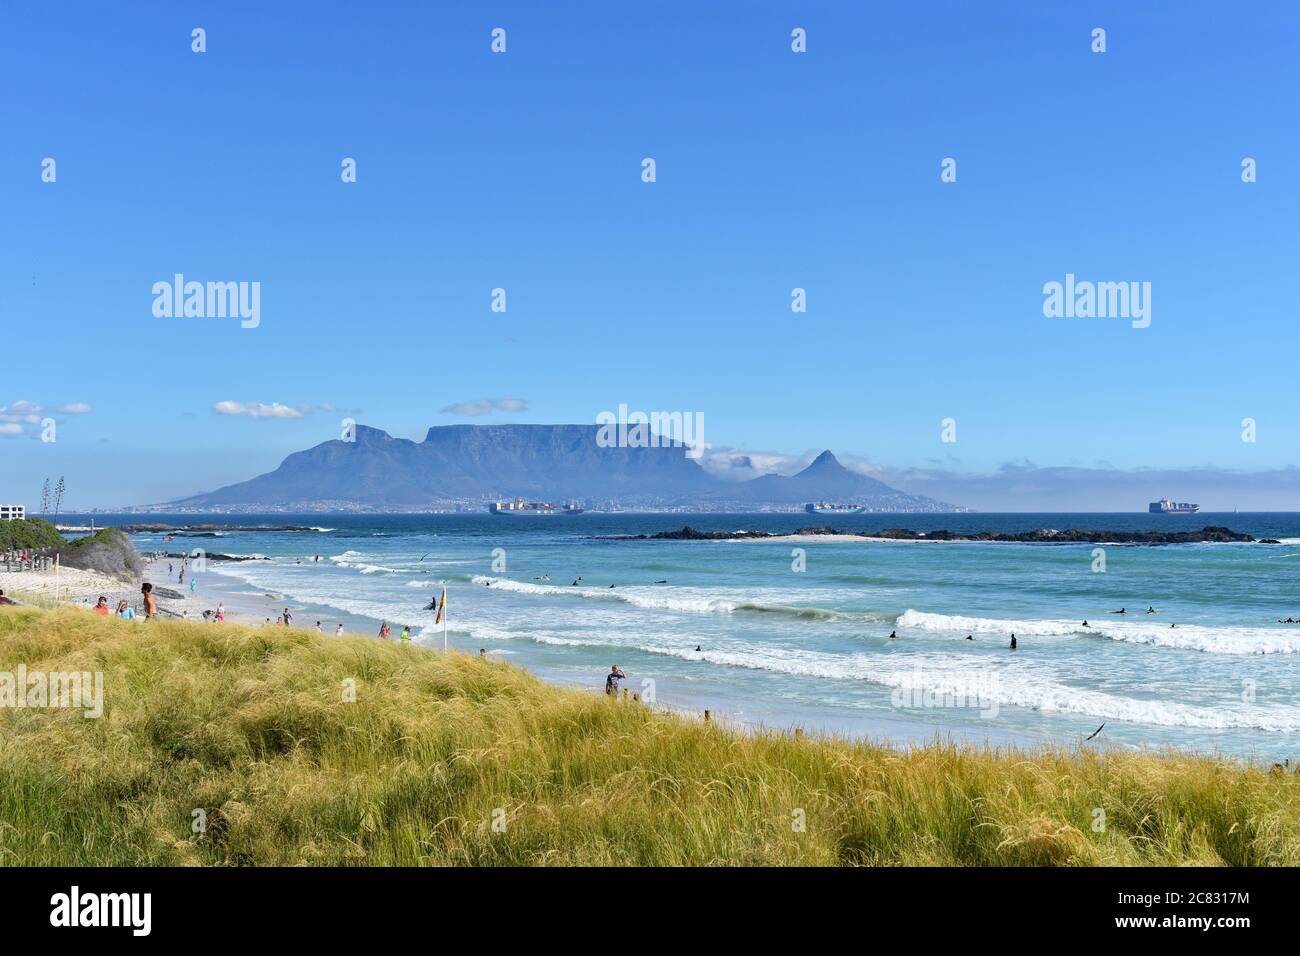 Tafelberg, Devils Peak und Lions Head vom Bloubergstrand Beach aus gesehen von der anderen Seite der Table Bay. Menschen können am Strand und im Wasser gesehen werden. Stockfoto